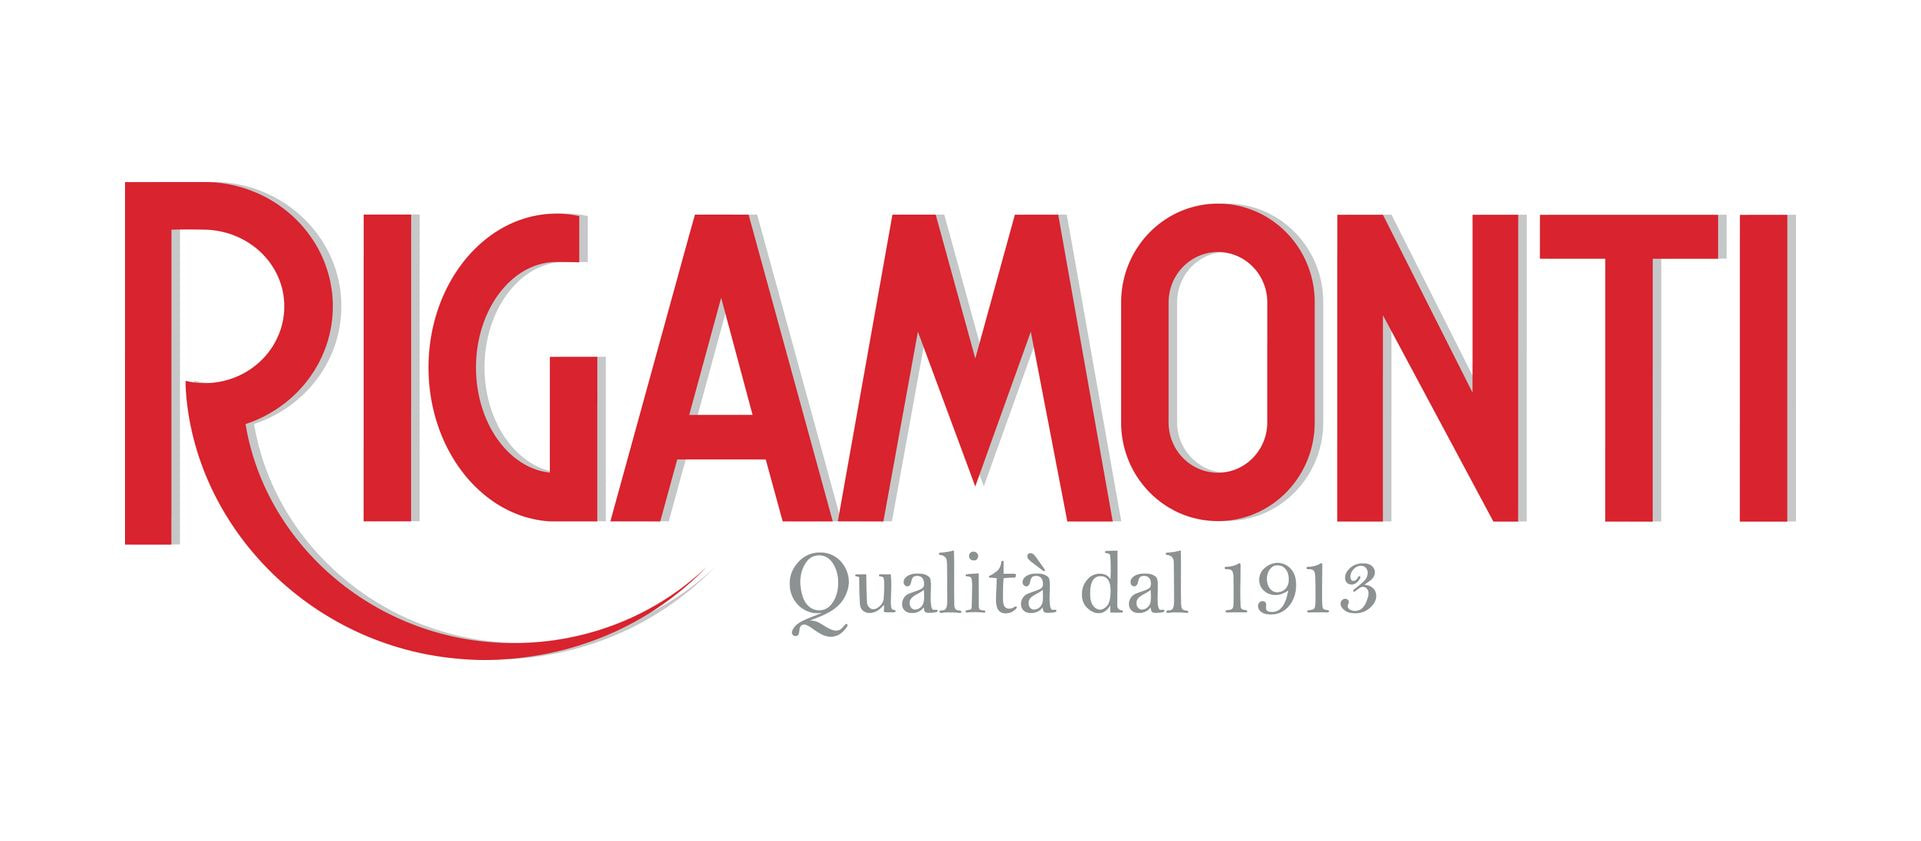 Nel 1913 nasceva la società Rigamonti, nota oggi come incontrastata leader di mercato nella produzione di bresaola.